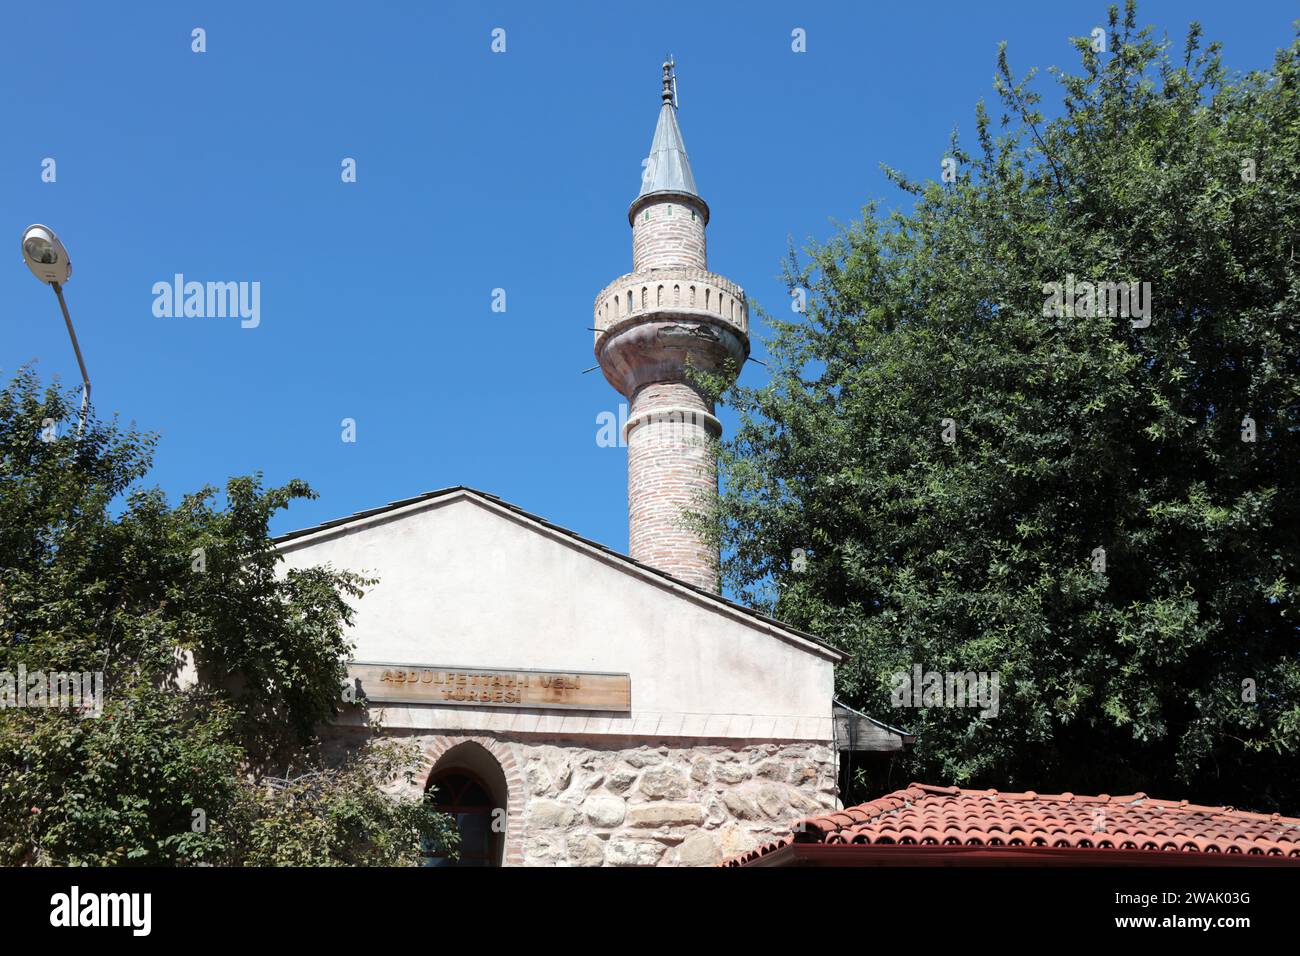 La tombe de Abdülfettah Veli a été construite en 1272 pendant la période seldjoukide anatolienne. Kastamonu, Turquie. Banque D'Images